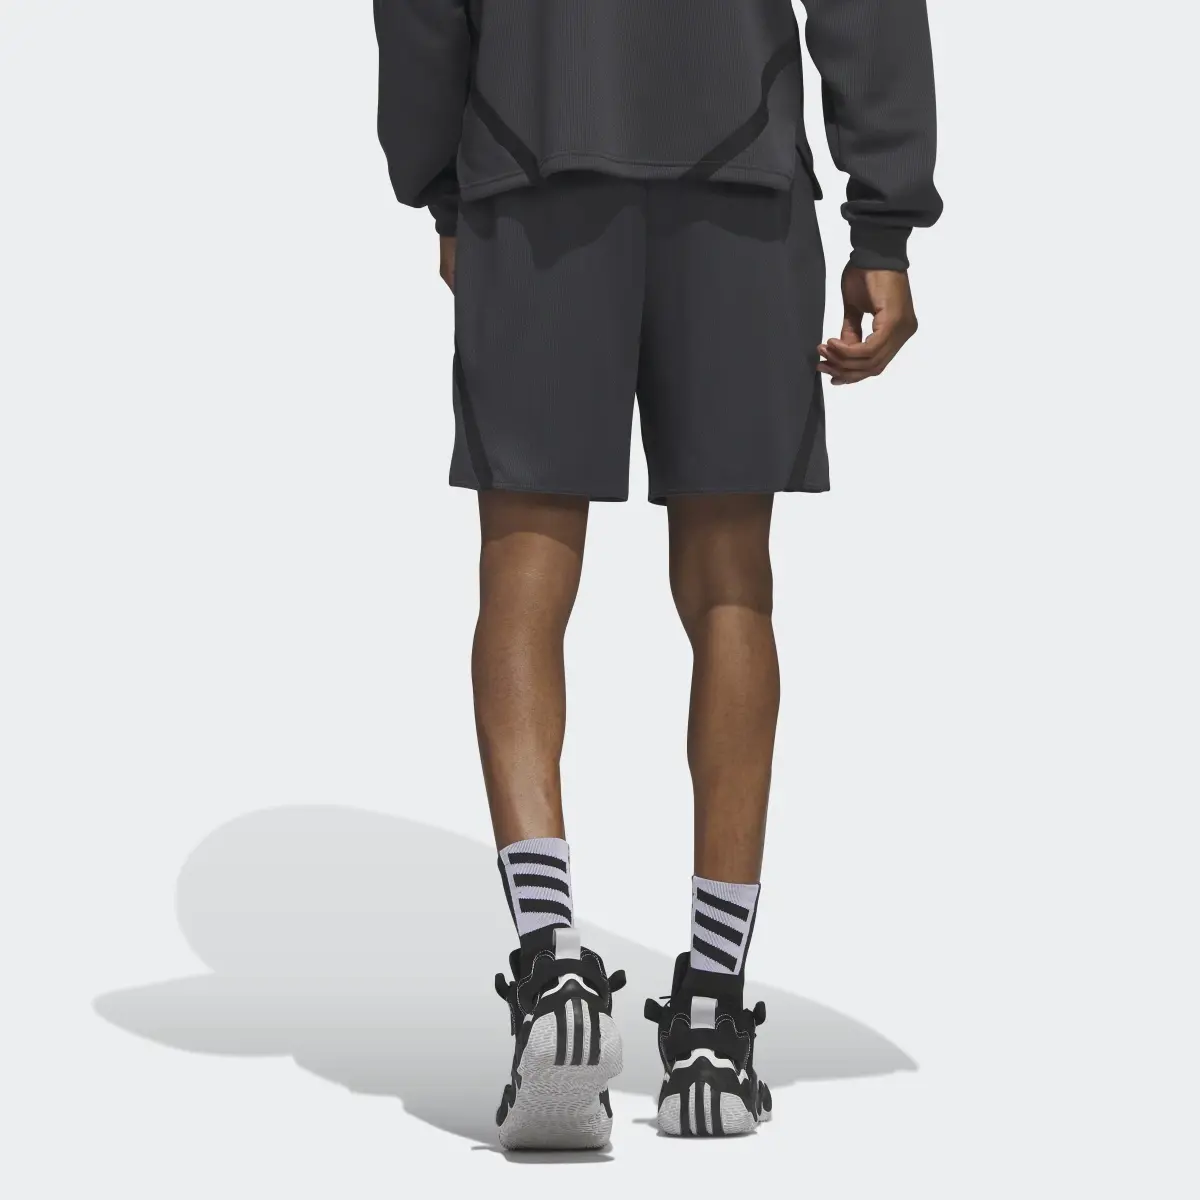 Adidas Select Shorts. 2